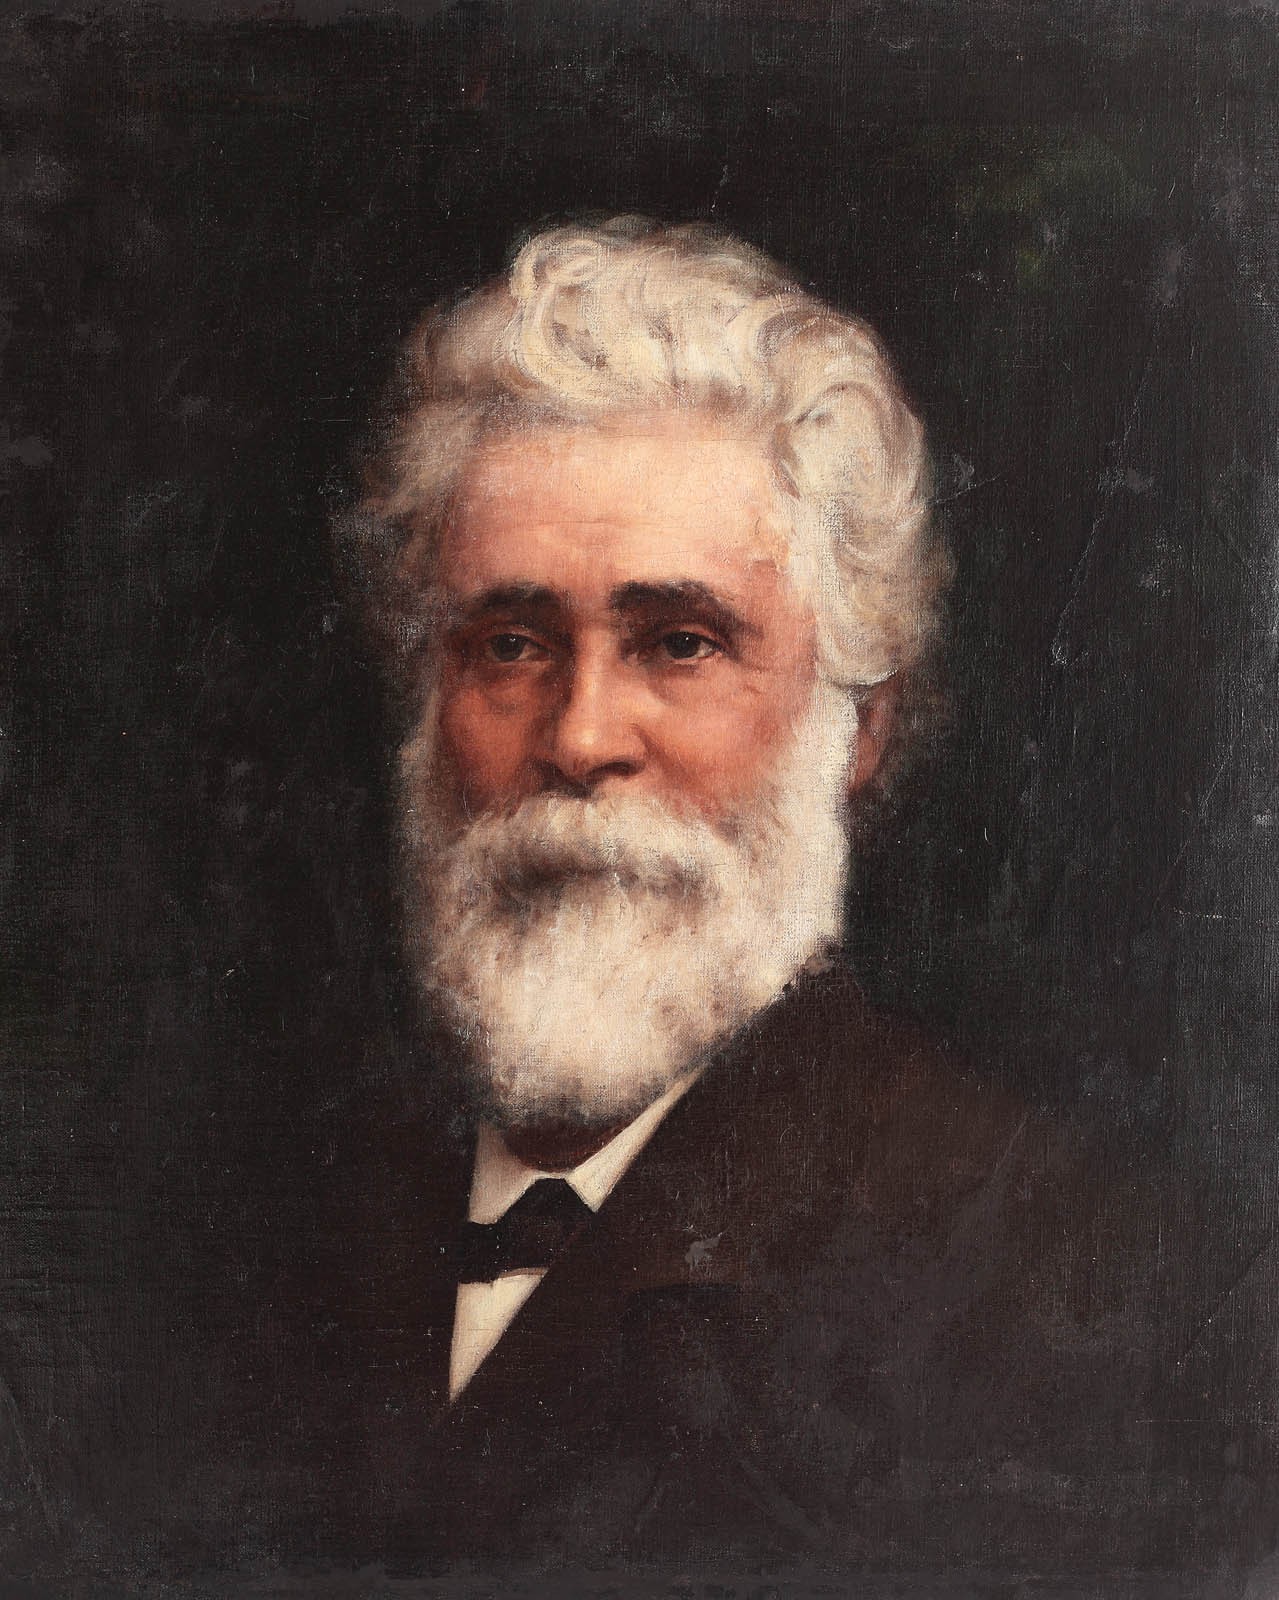 Ion C. Brătianu, tatăl lui Ionel Brătianu om politic român al secolului XIX.